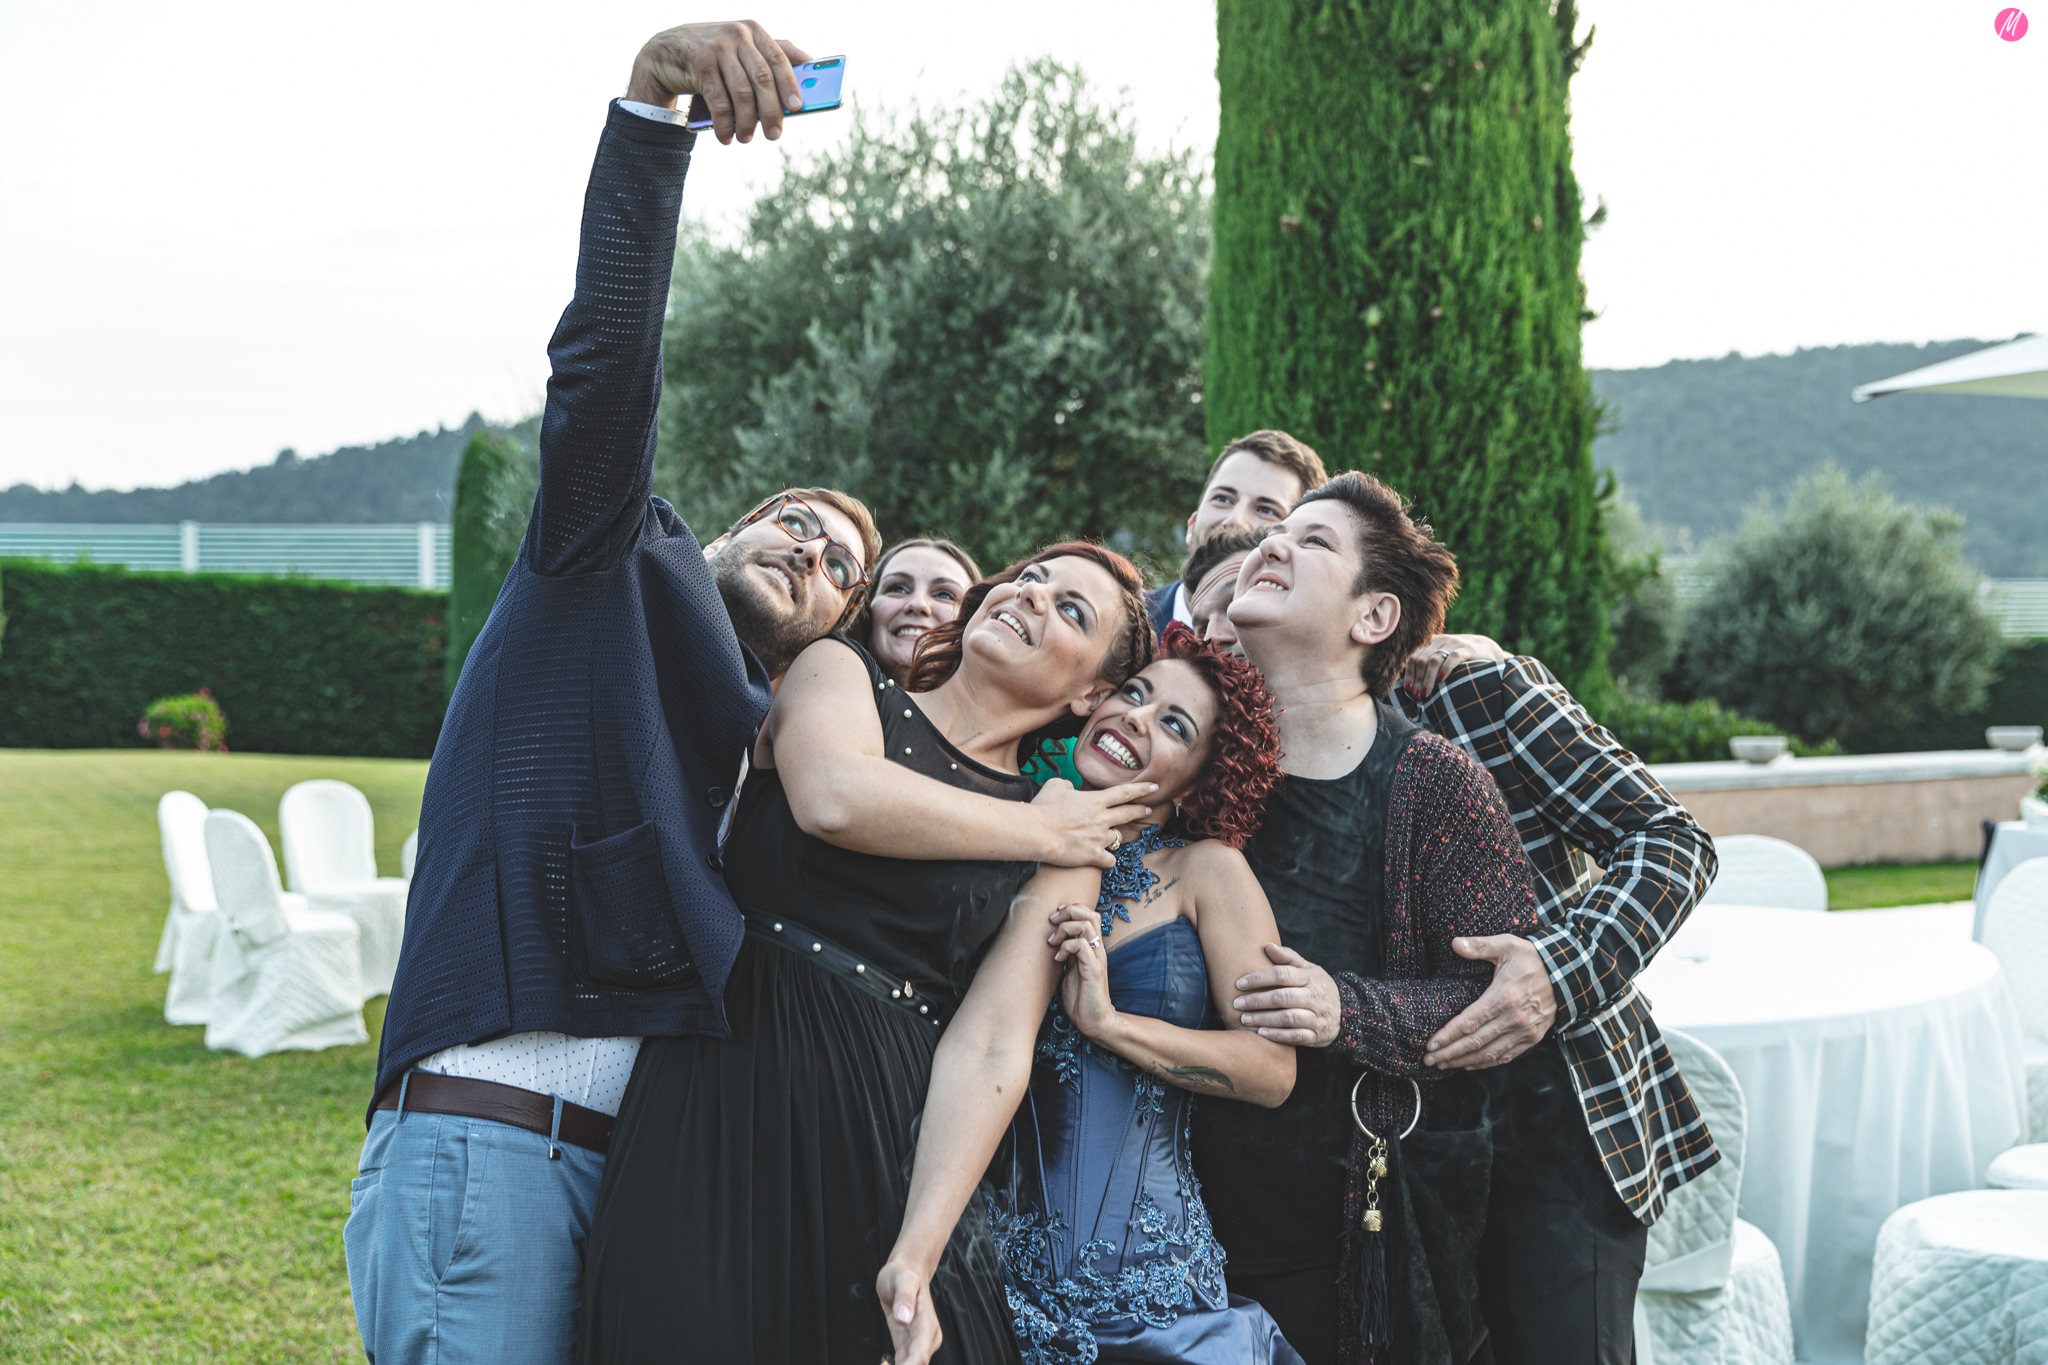 comezzano cizzago selfie By Innamorati